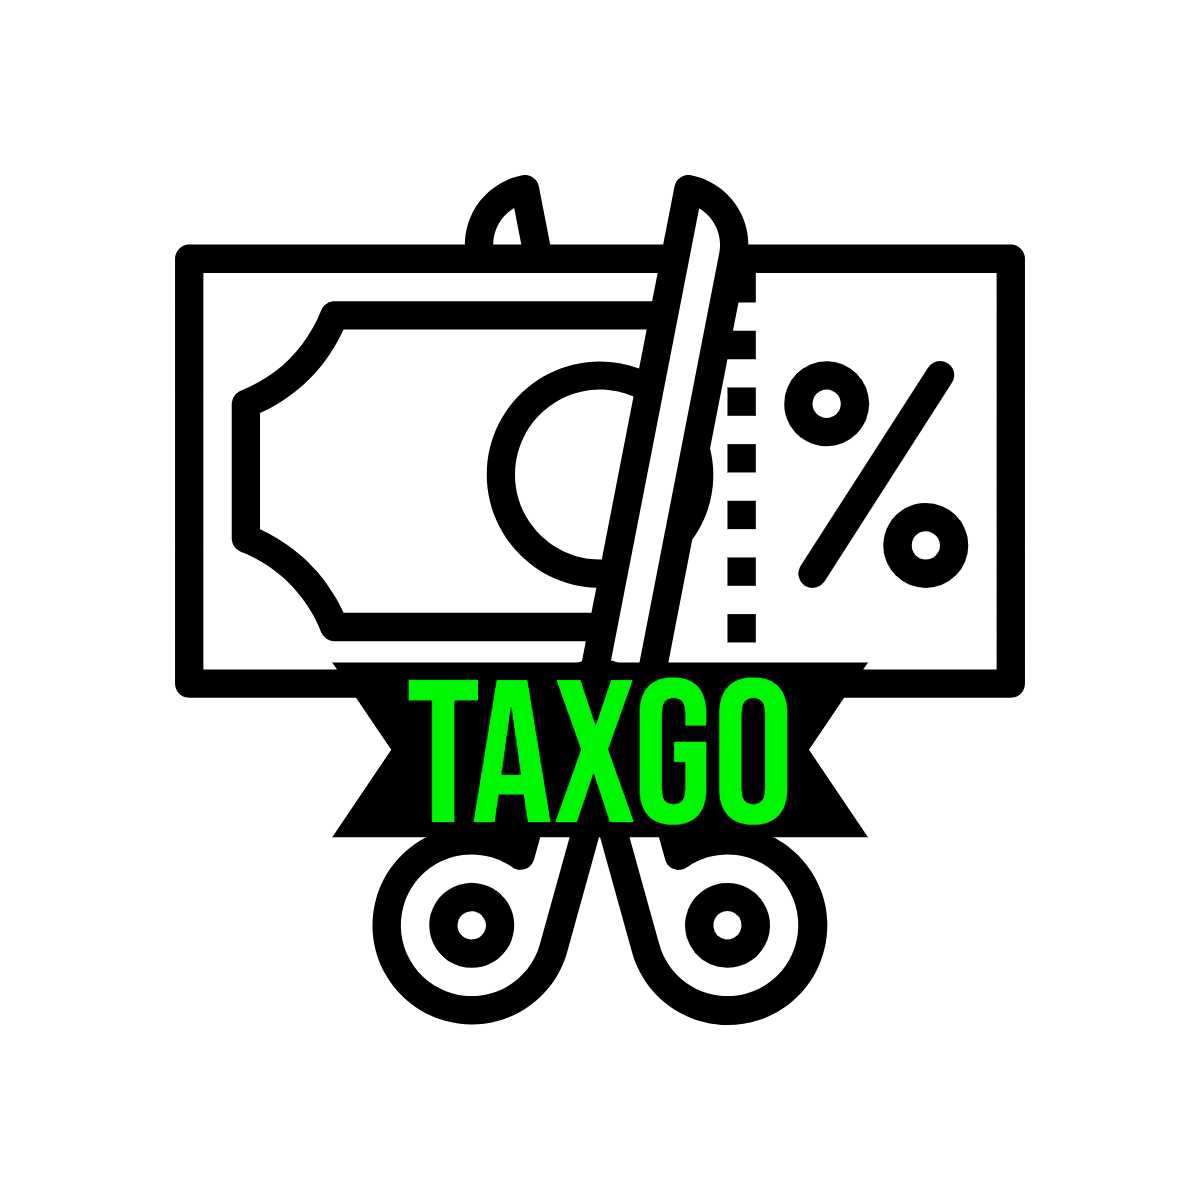 TaxGO logos transparent